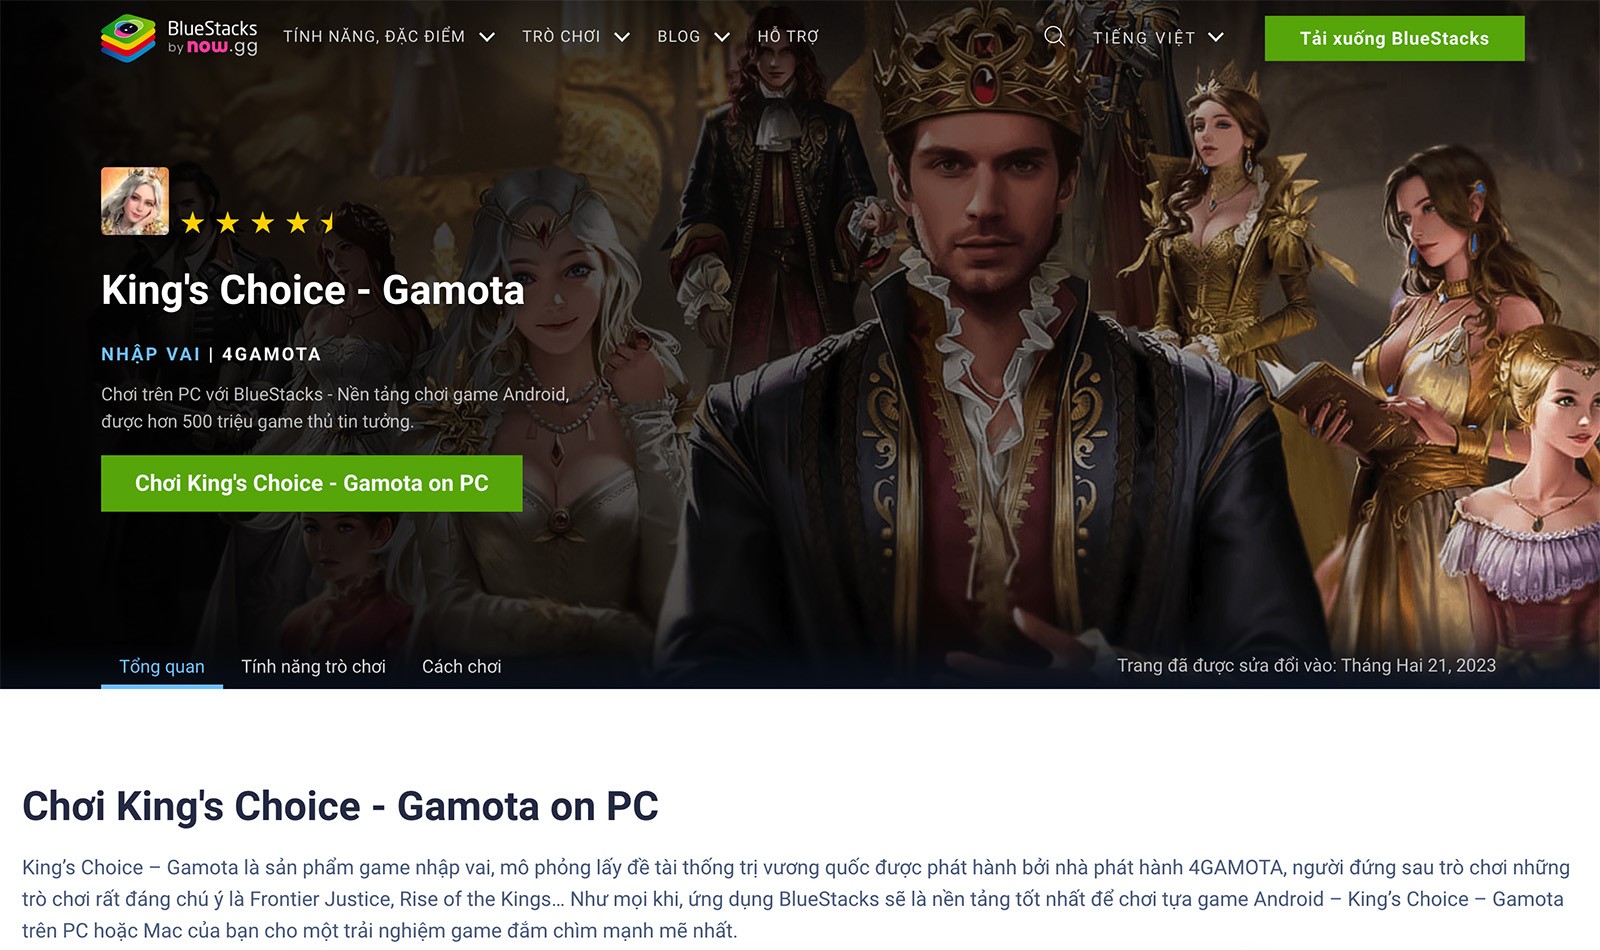 Trải nghiệm làm vua chúa khi chơi King's Choice - Gamota trên PC